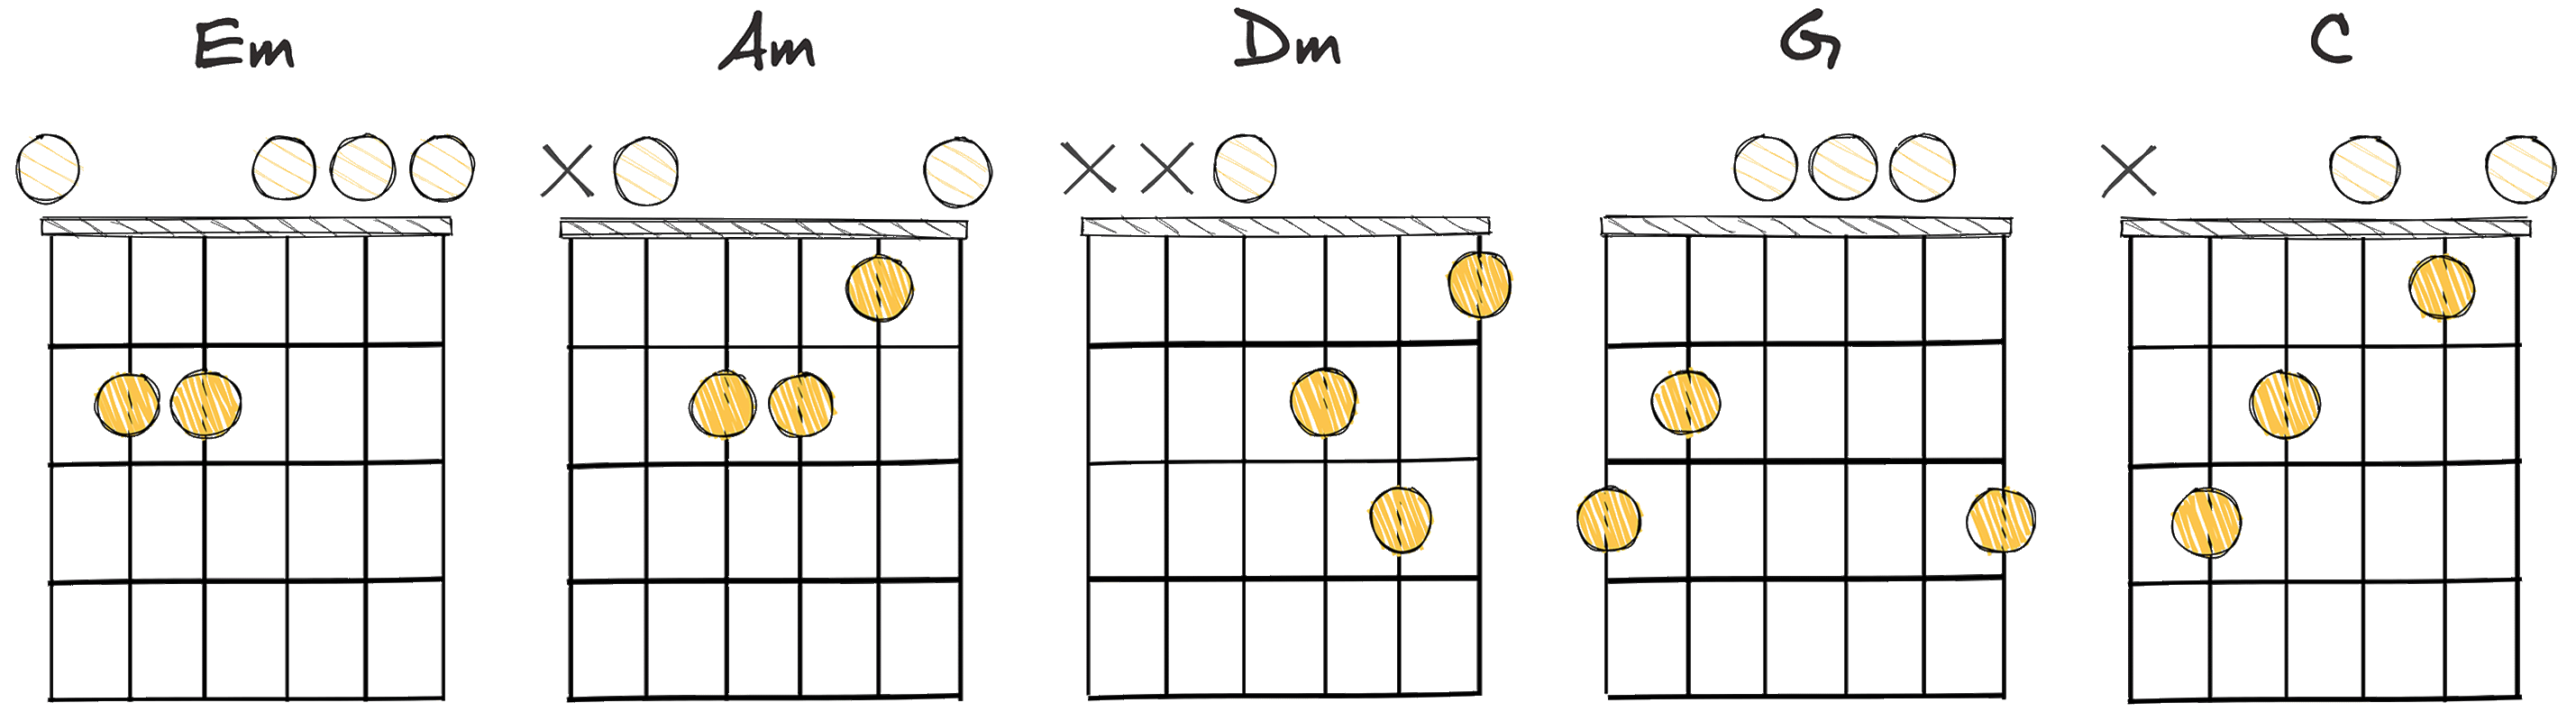 iii - vi - ii - V - I (3 - 6 - 2 - 5 - 1) chords diagram